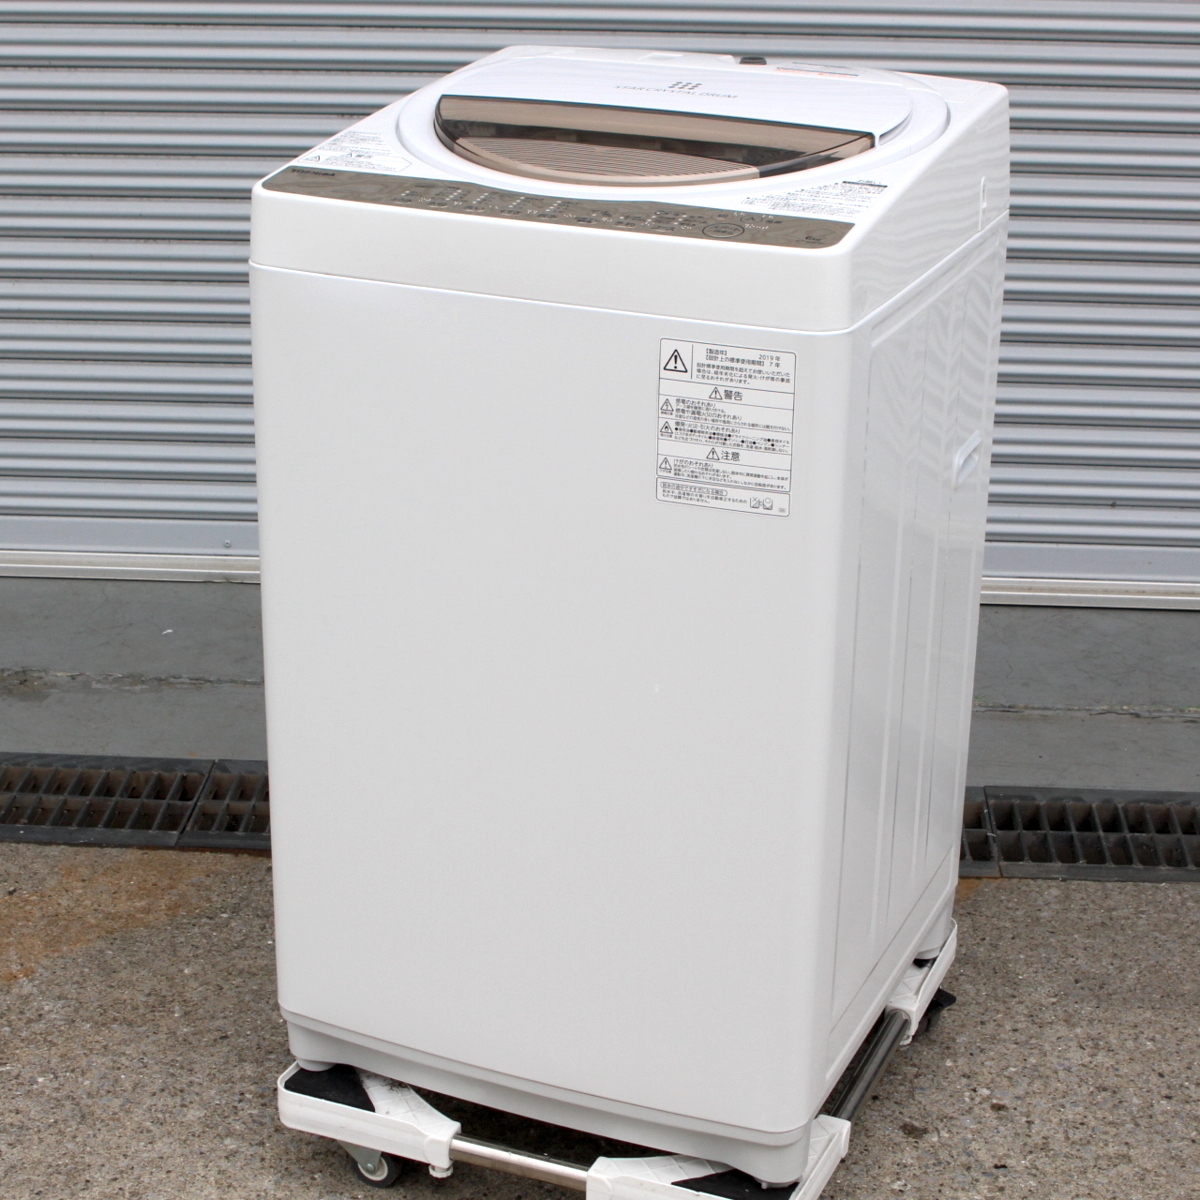 東京都江東区にて 東芝 洗濯機 AW-6G8 2019年製 を出張買取させて頂きました。